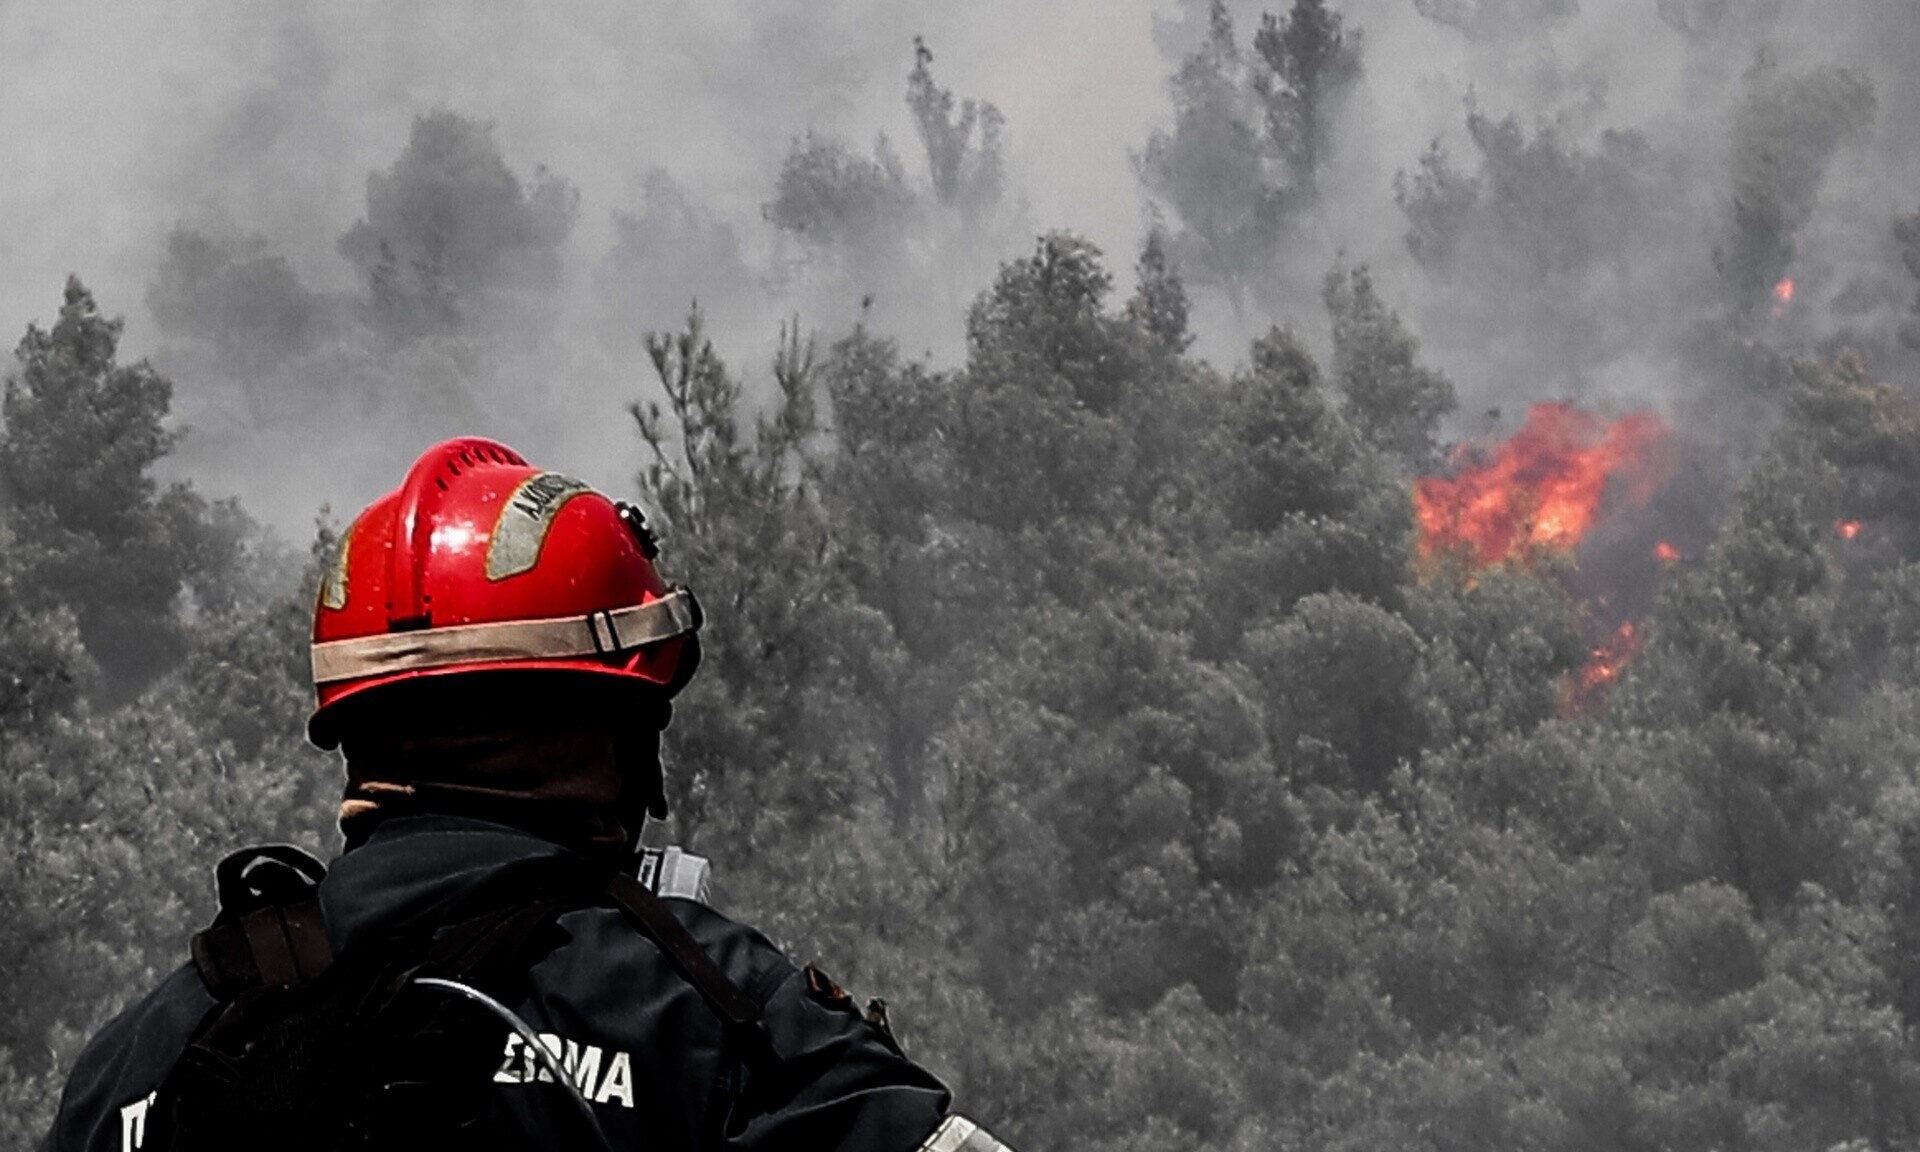 Κίνδυνος εκδήλωσης φωτιάς σε έξι περιοχές - Σε επιφυλακή η Πυροσβεστική